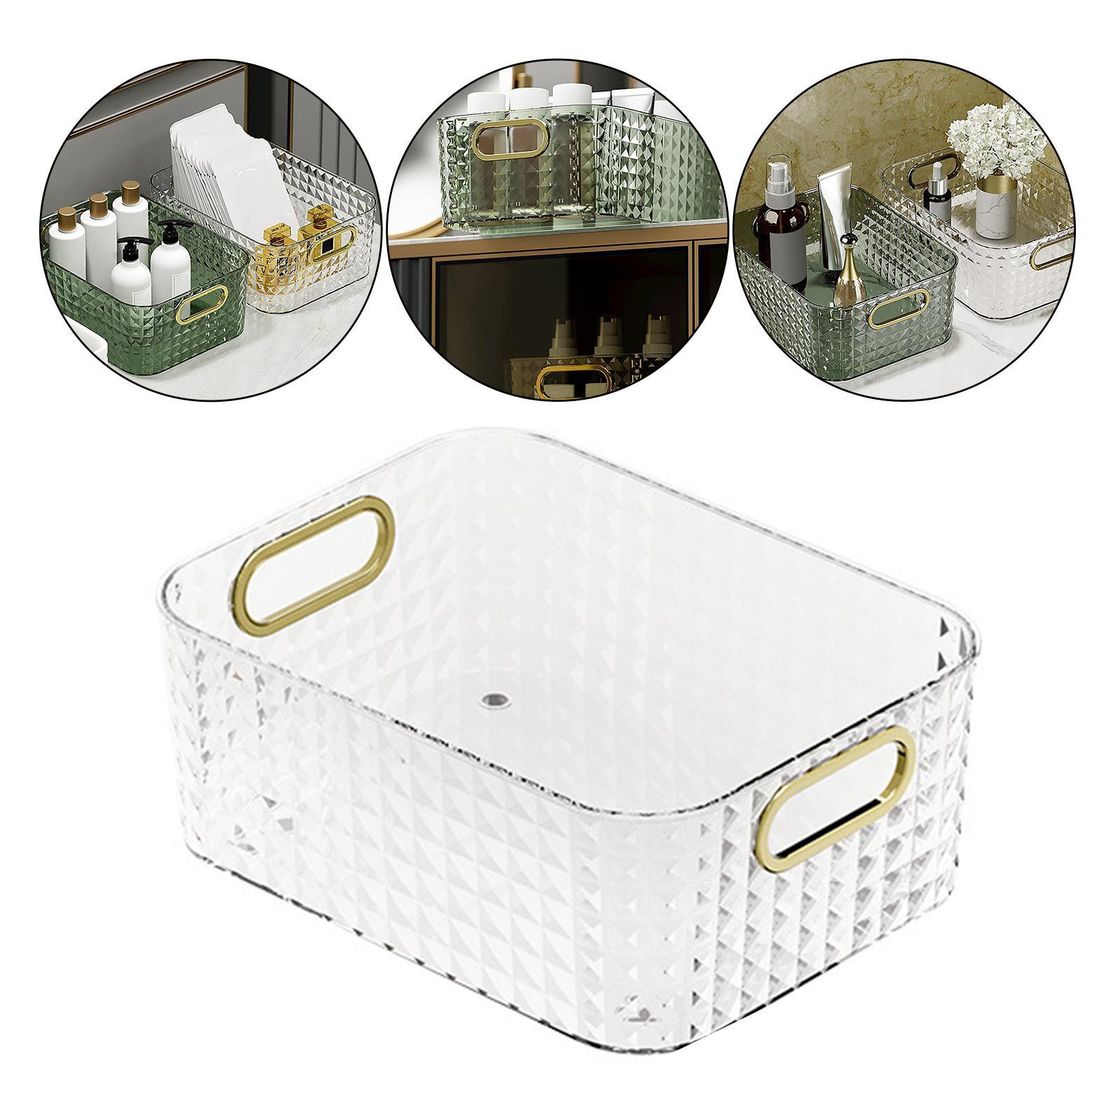 A White Color Portable Cosmetics Holder Storage Box